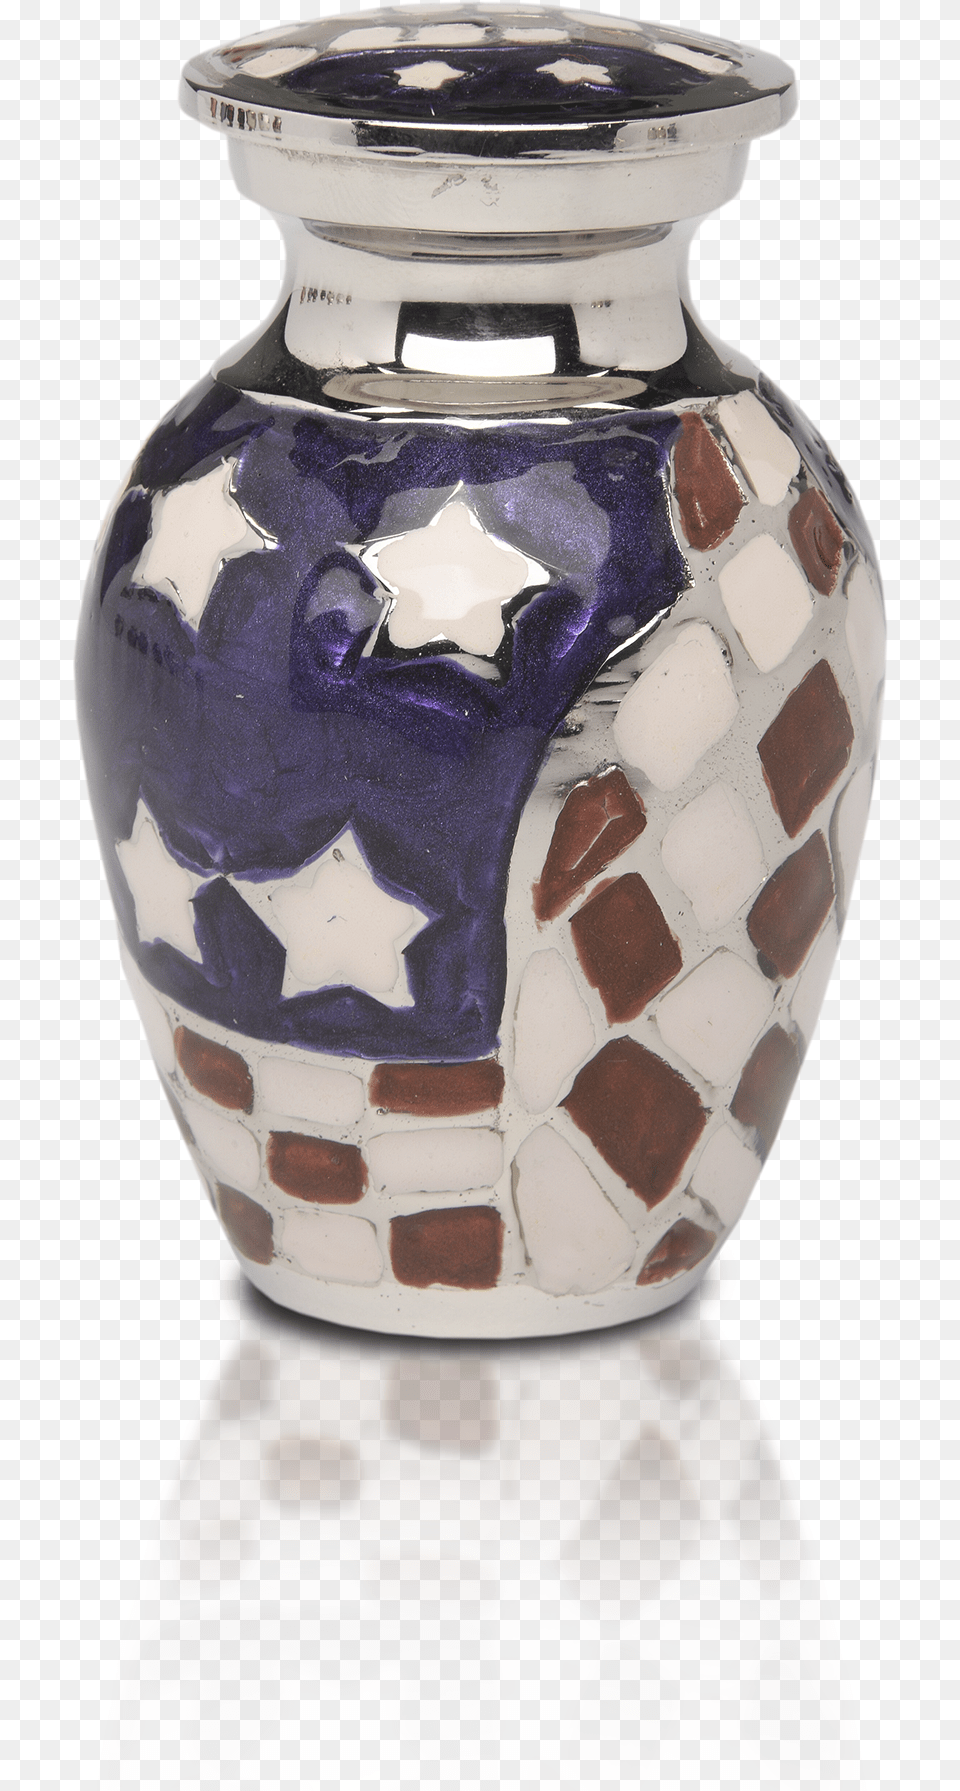 Patriotic Red White Amp Blue American Flag Cremation Vase, Jar, Pottery, Urn Png